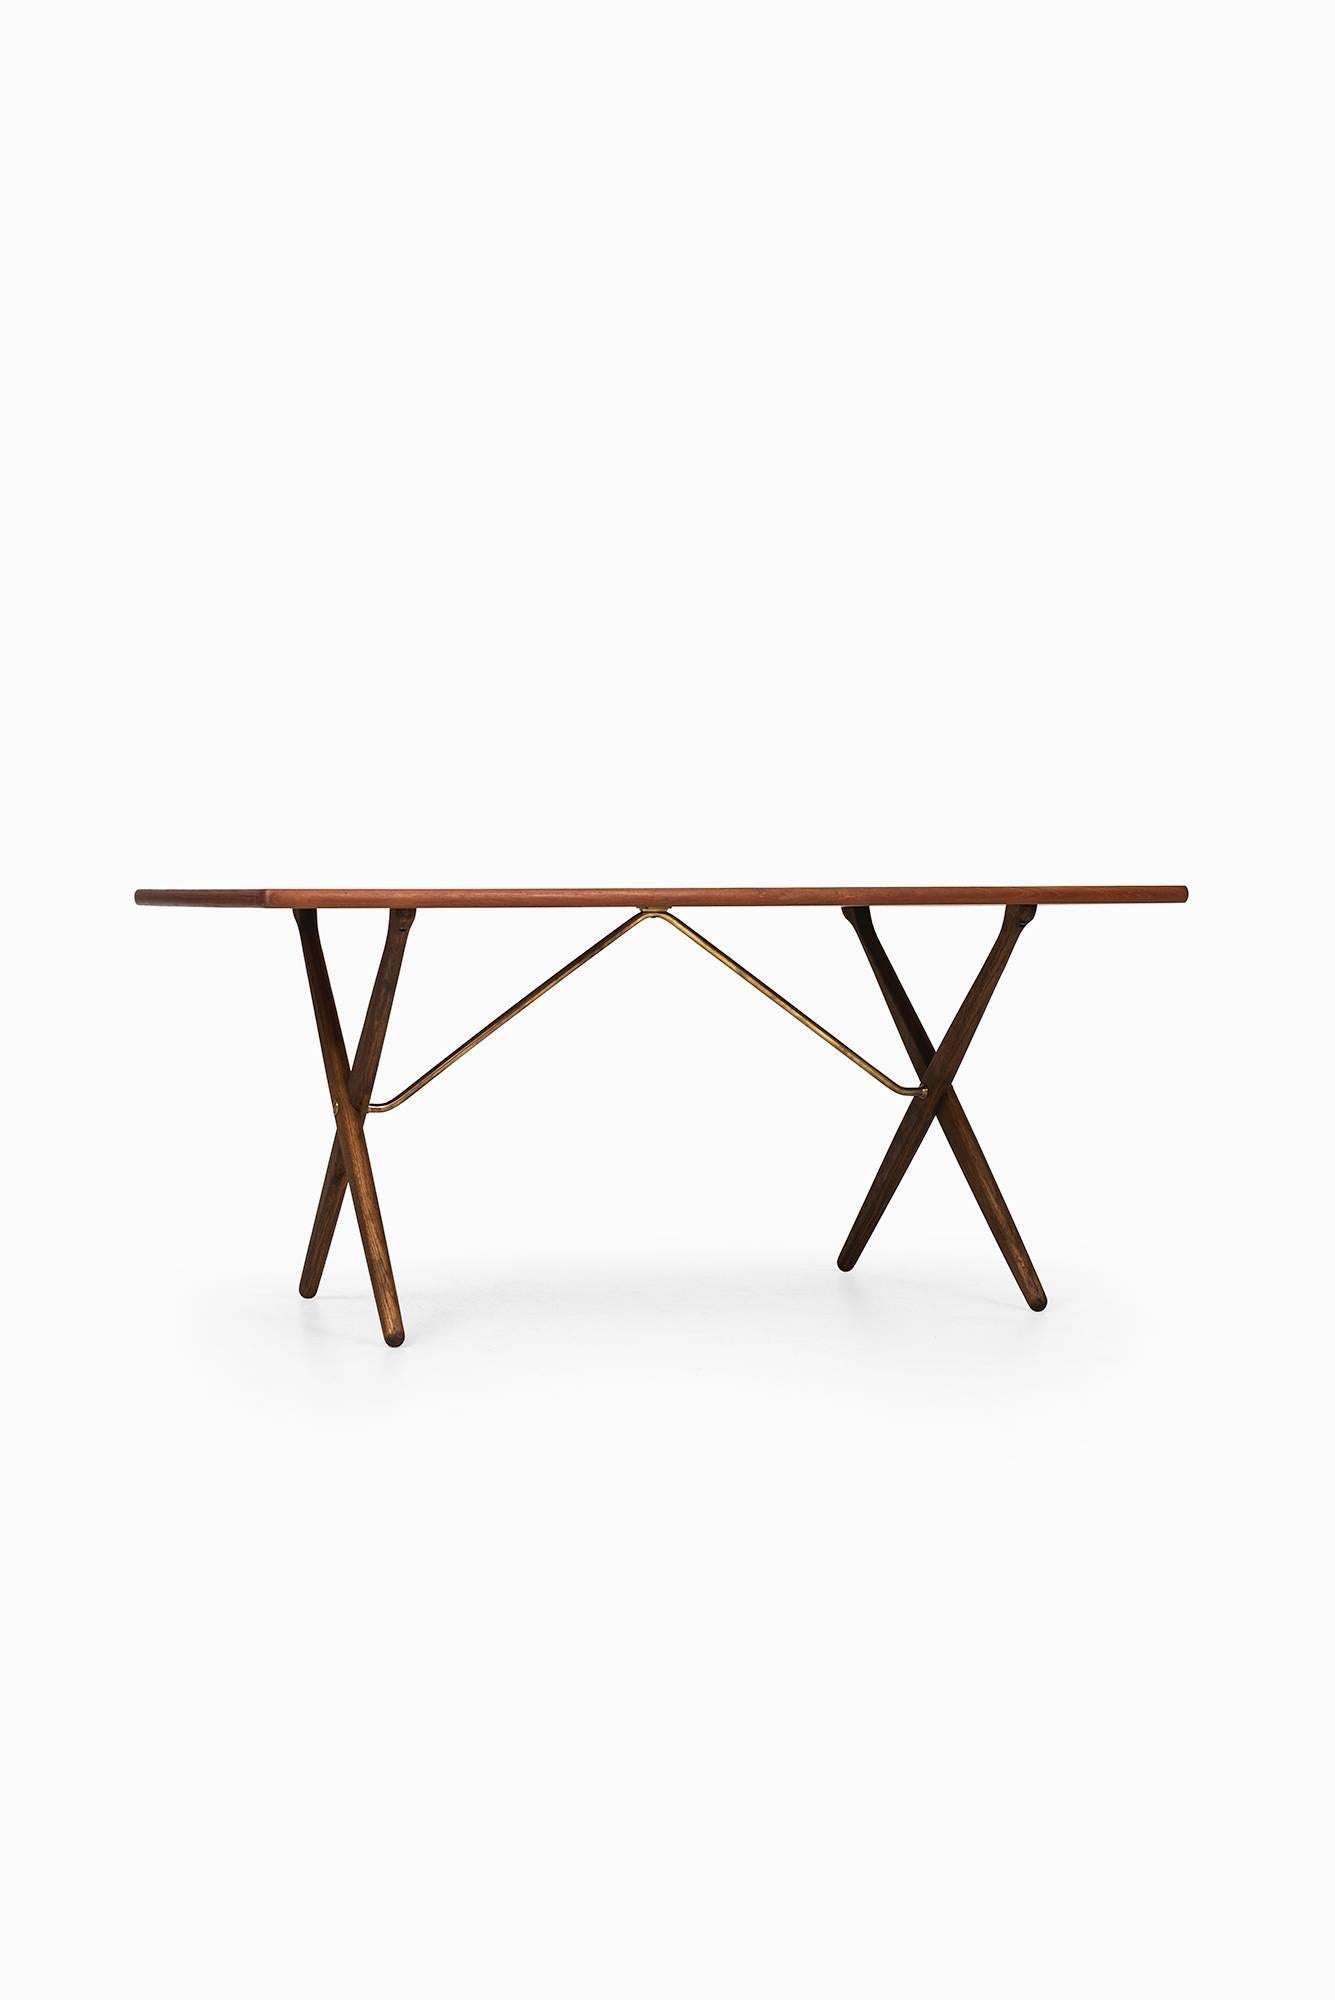 Brass Hans Wegner Dining Table/Desk Model At-303 by Andreas Tuck in Denmark